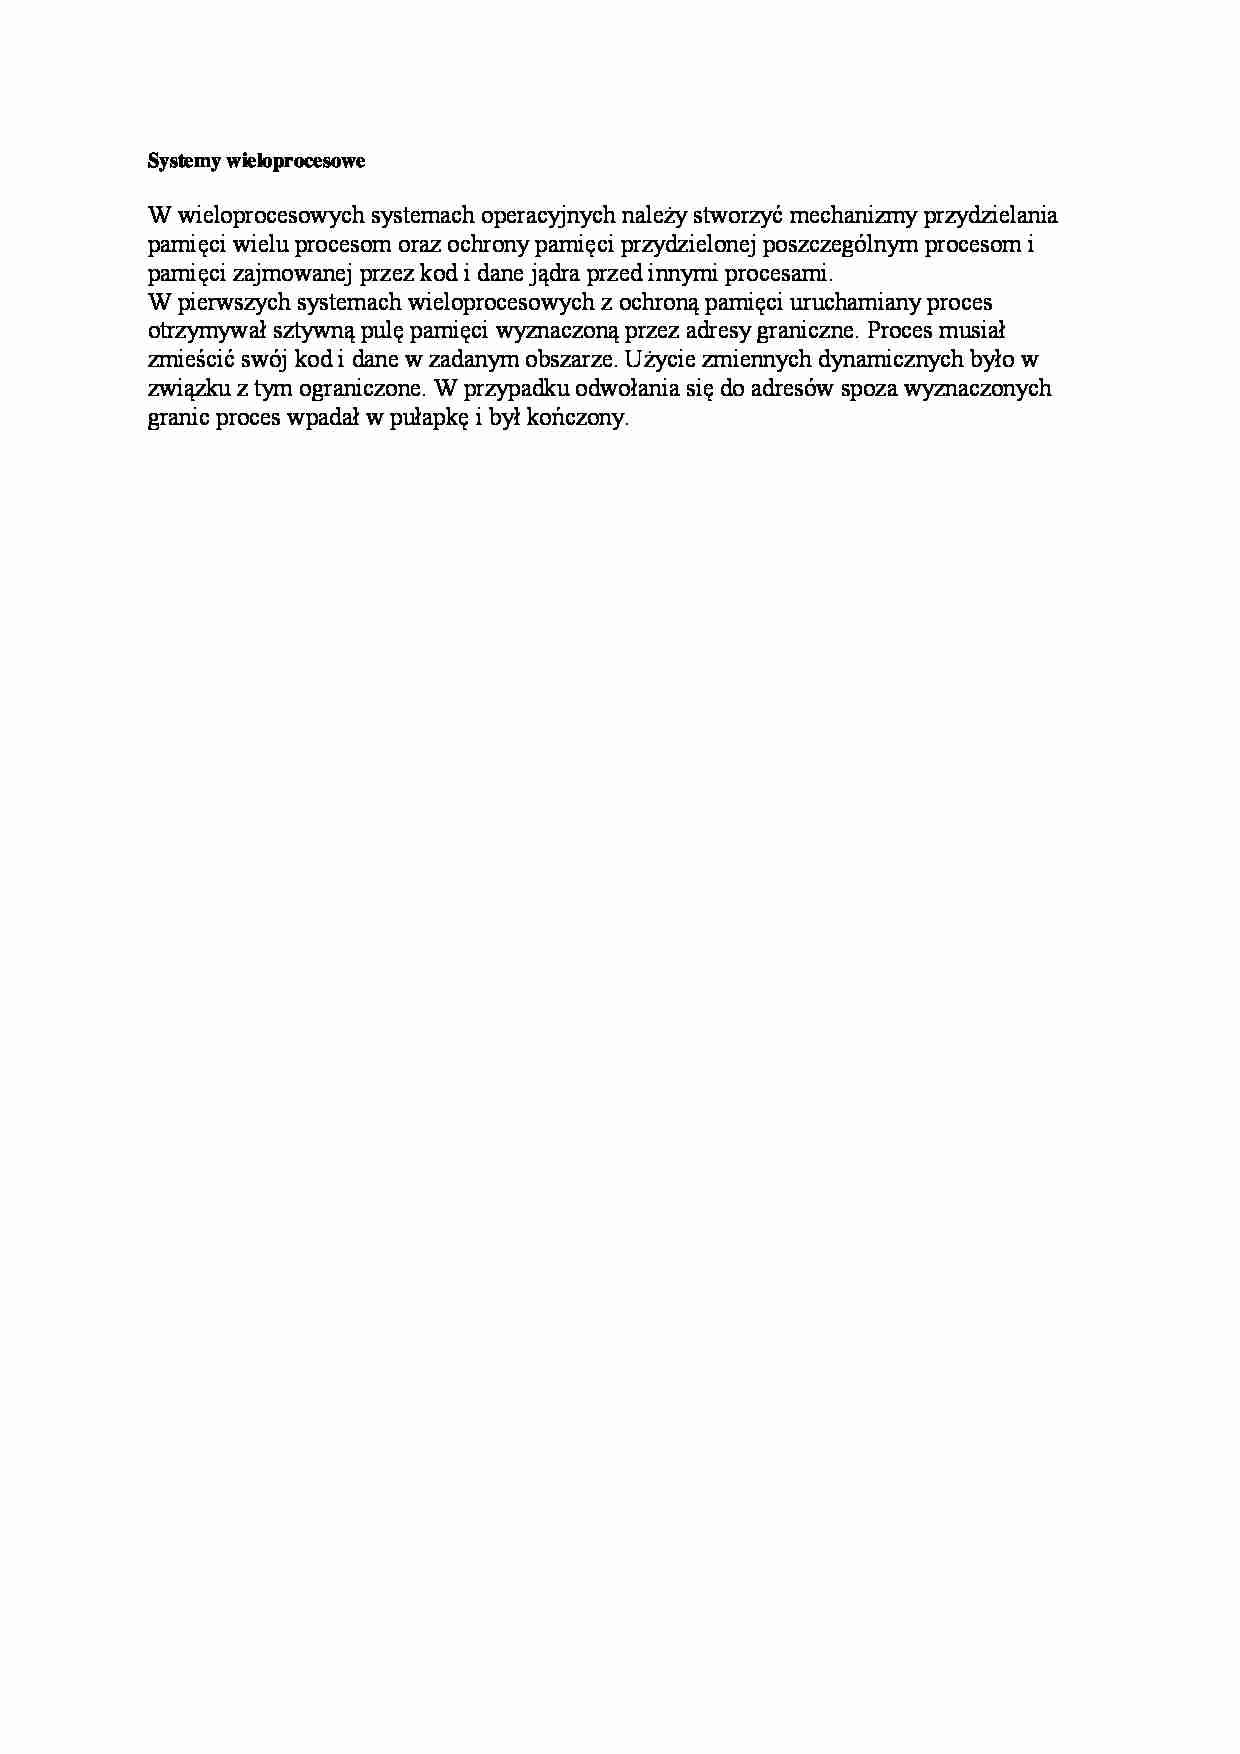 Systemy wieloprocesowe - opracowanie - strona 1